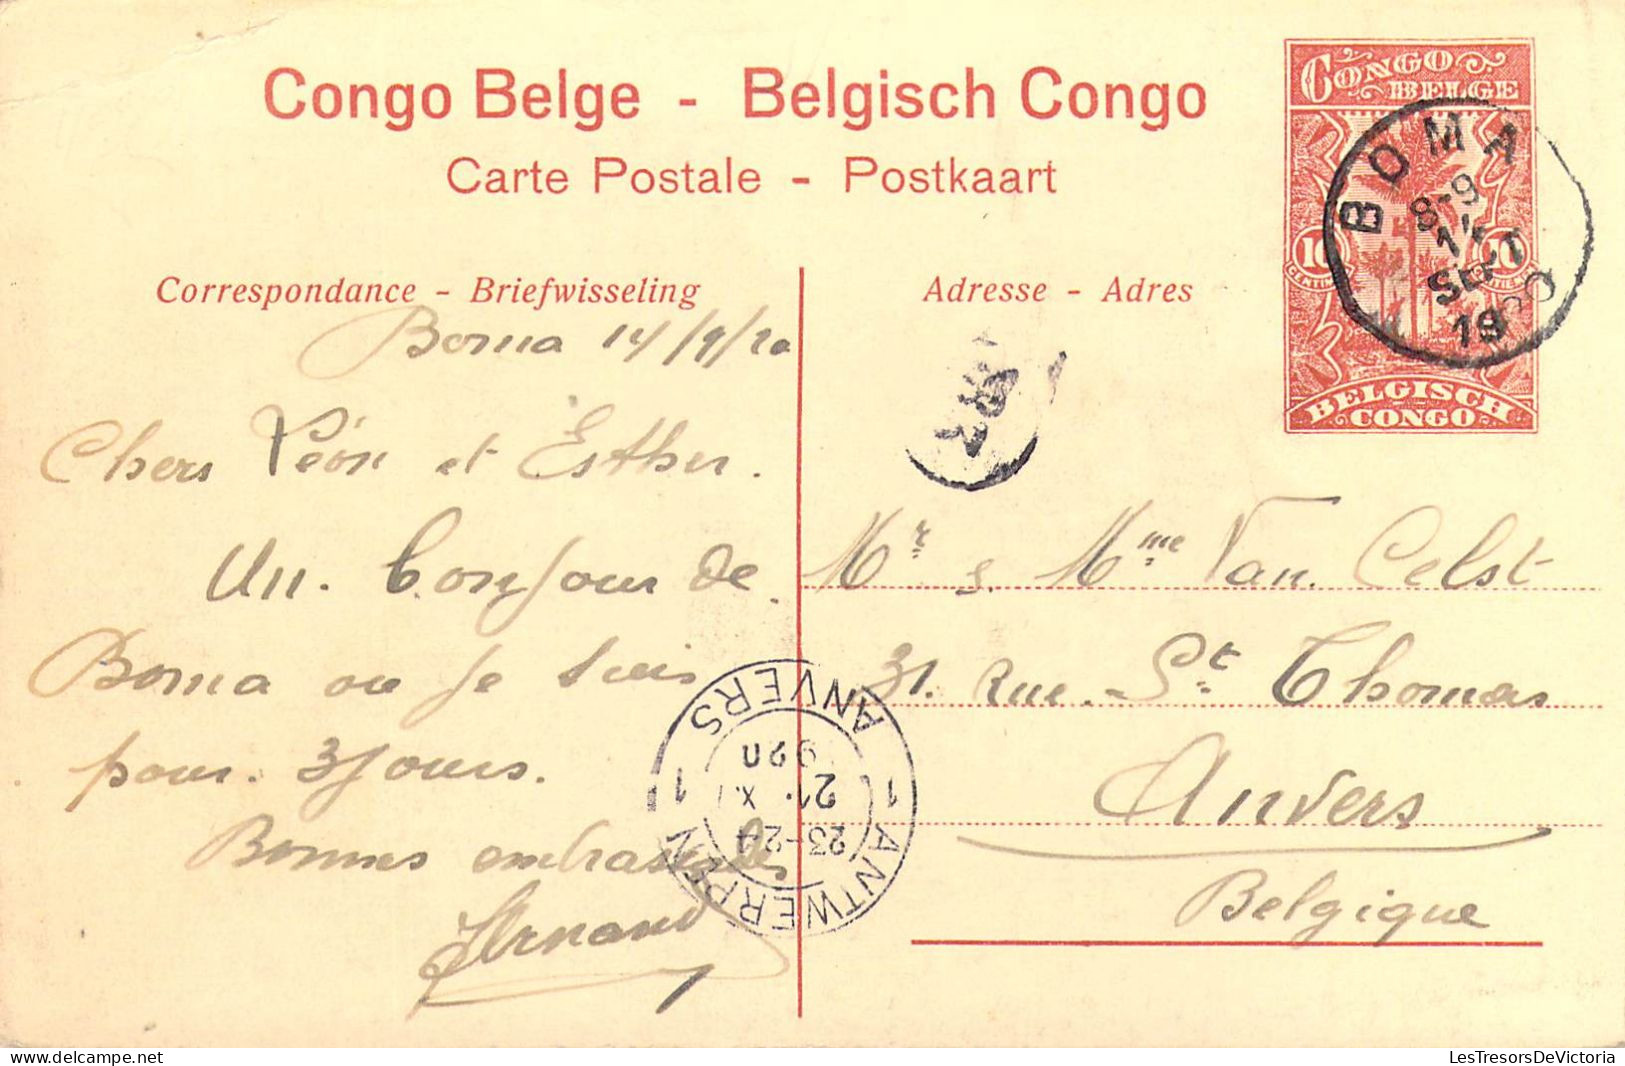 CONGO BELGE - Chutes De La Lubilash Près De Tshala - Carte Postale Ancienne - Congo Belge